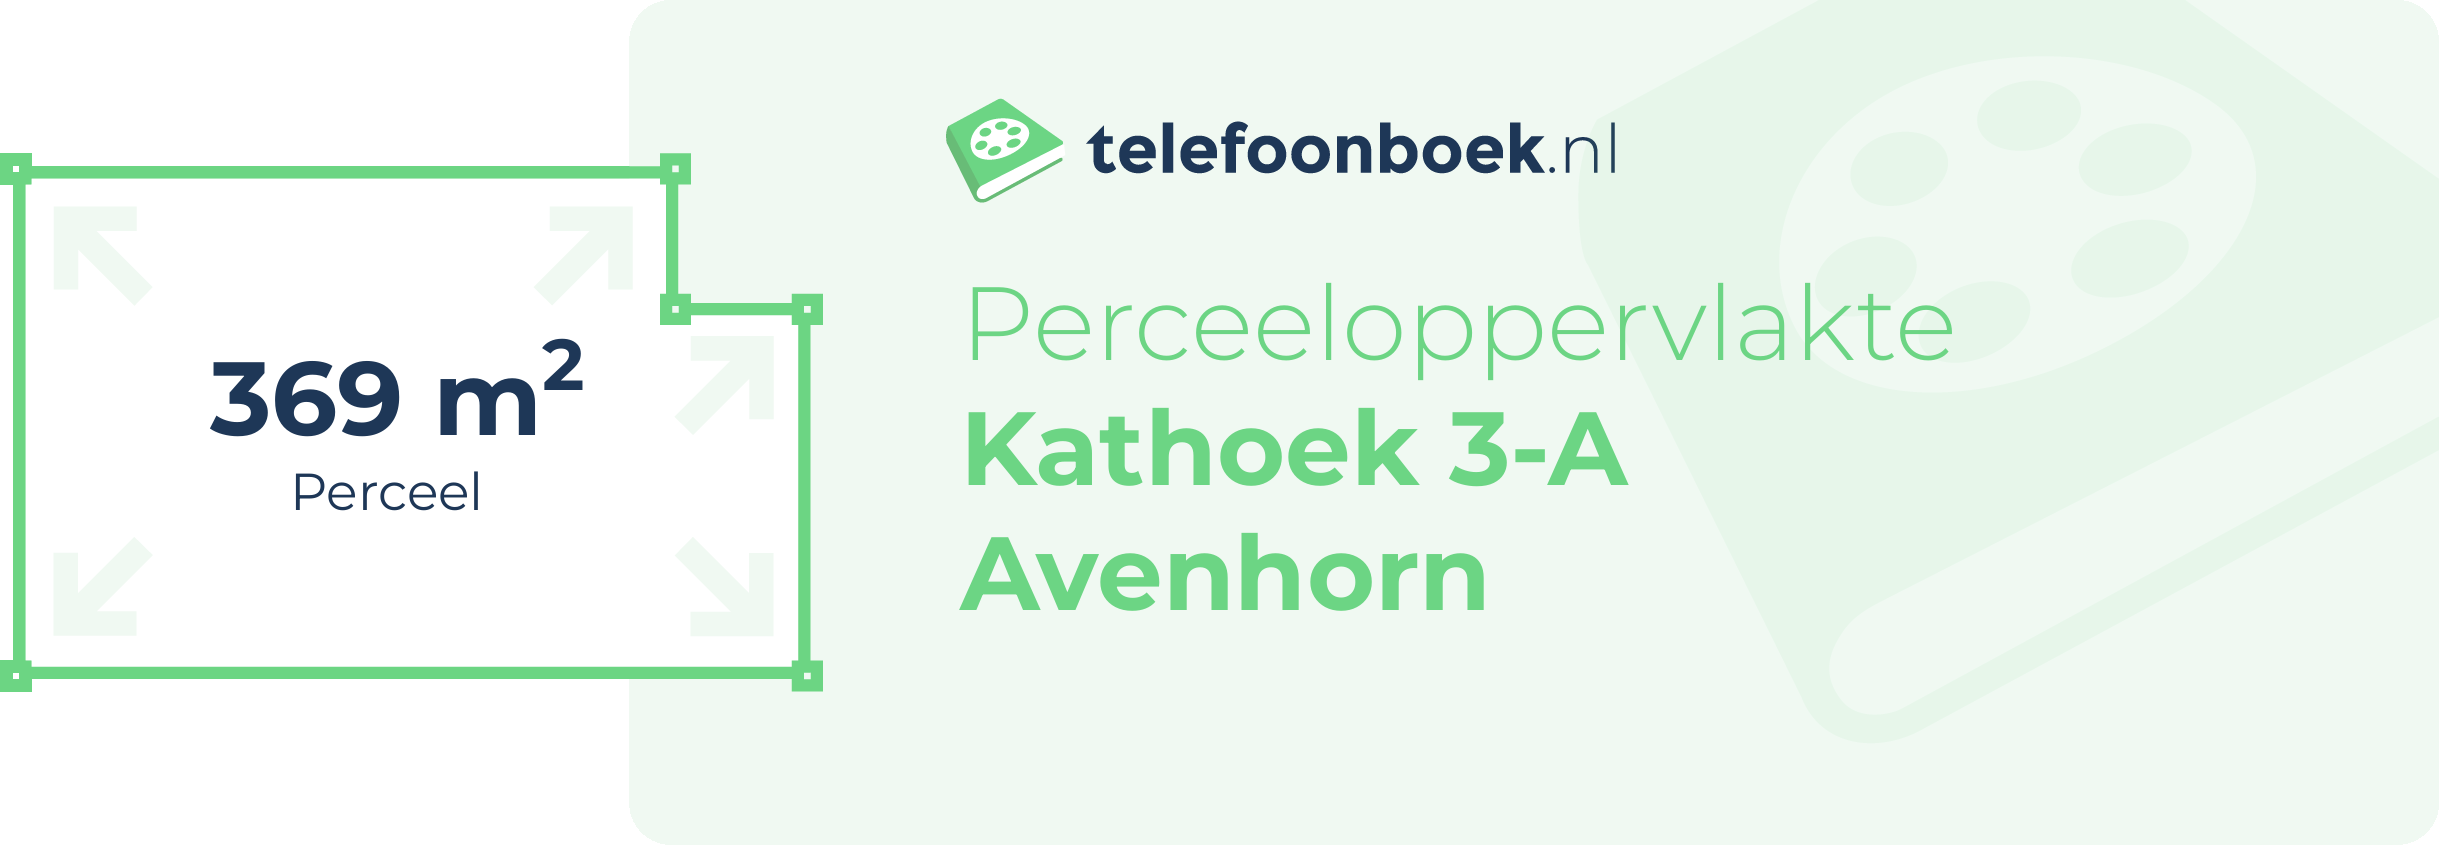 Perceeloppervlakte Kathoek 3-A Avenhorn